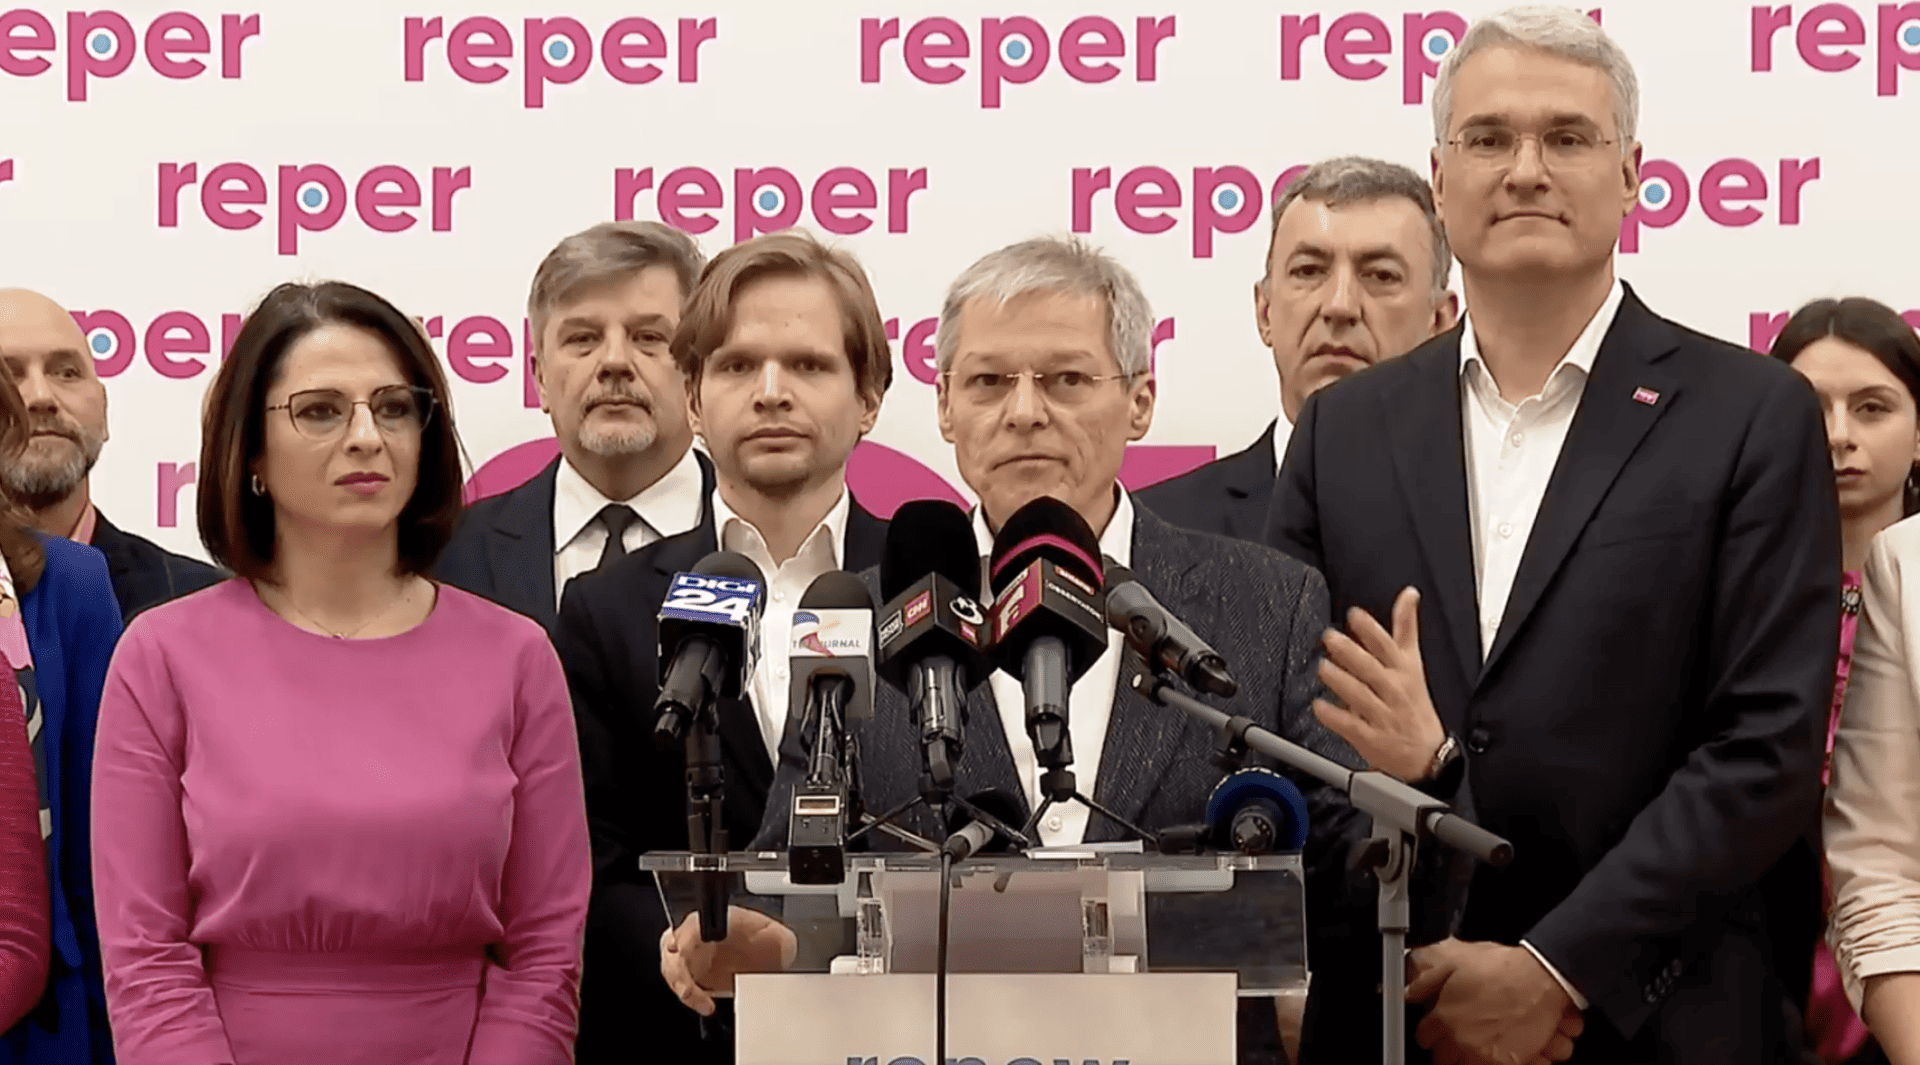 Fostul prim-ministru Dacian Cioloș deschide lista de candidați REPER pentru Parlamentul European